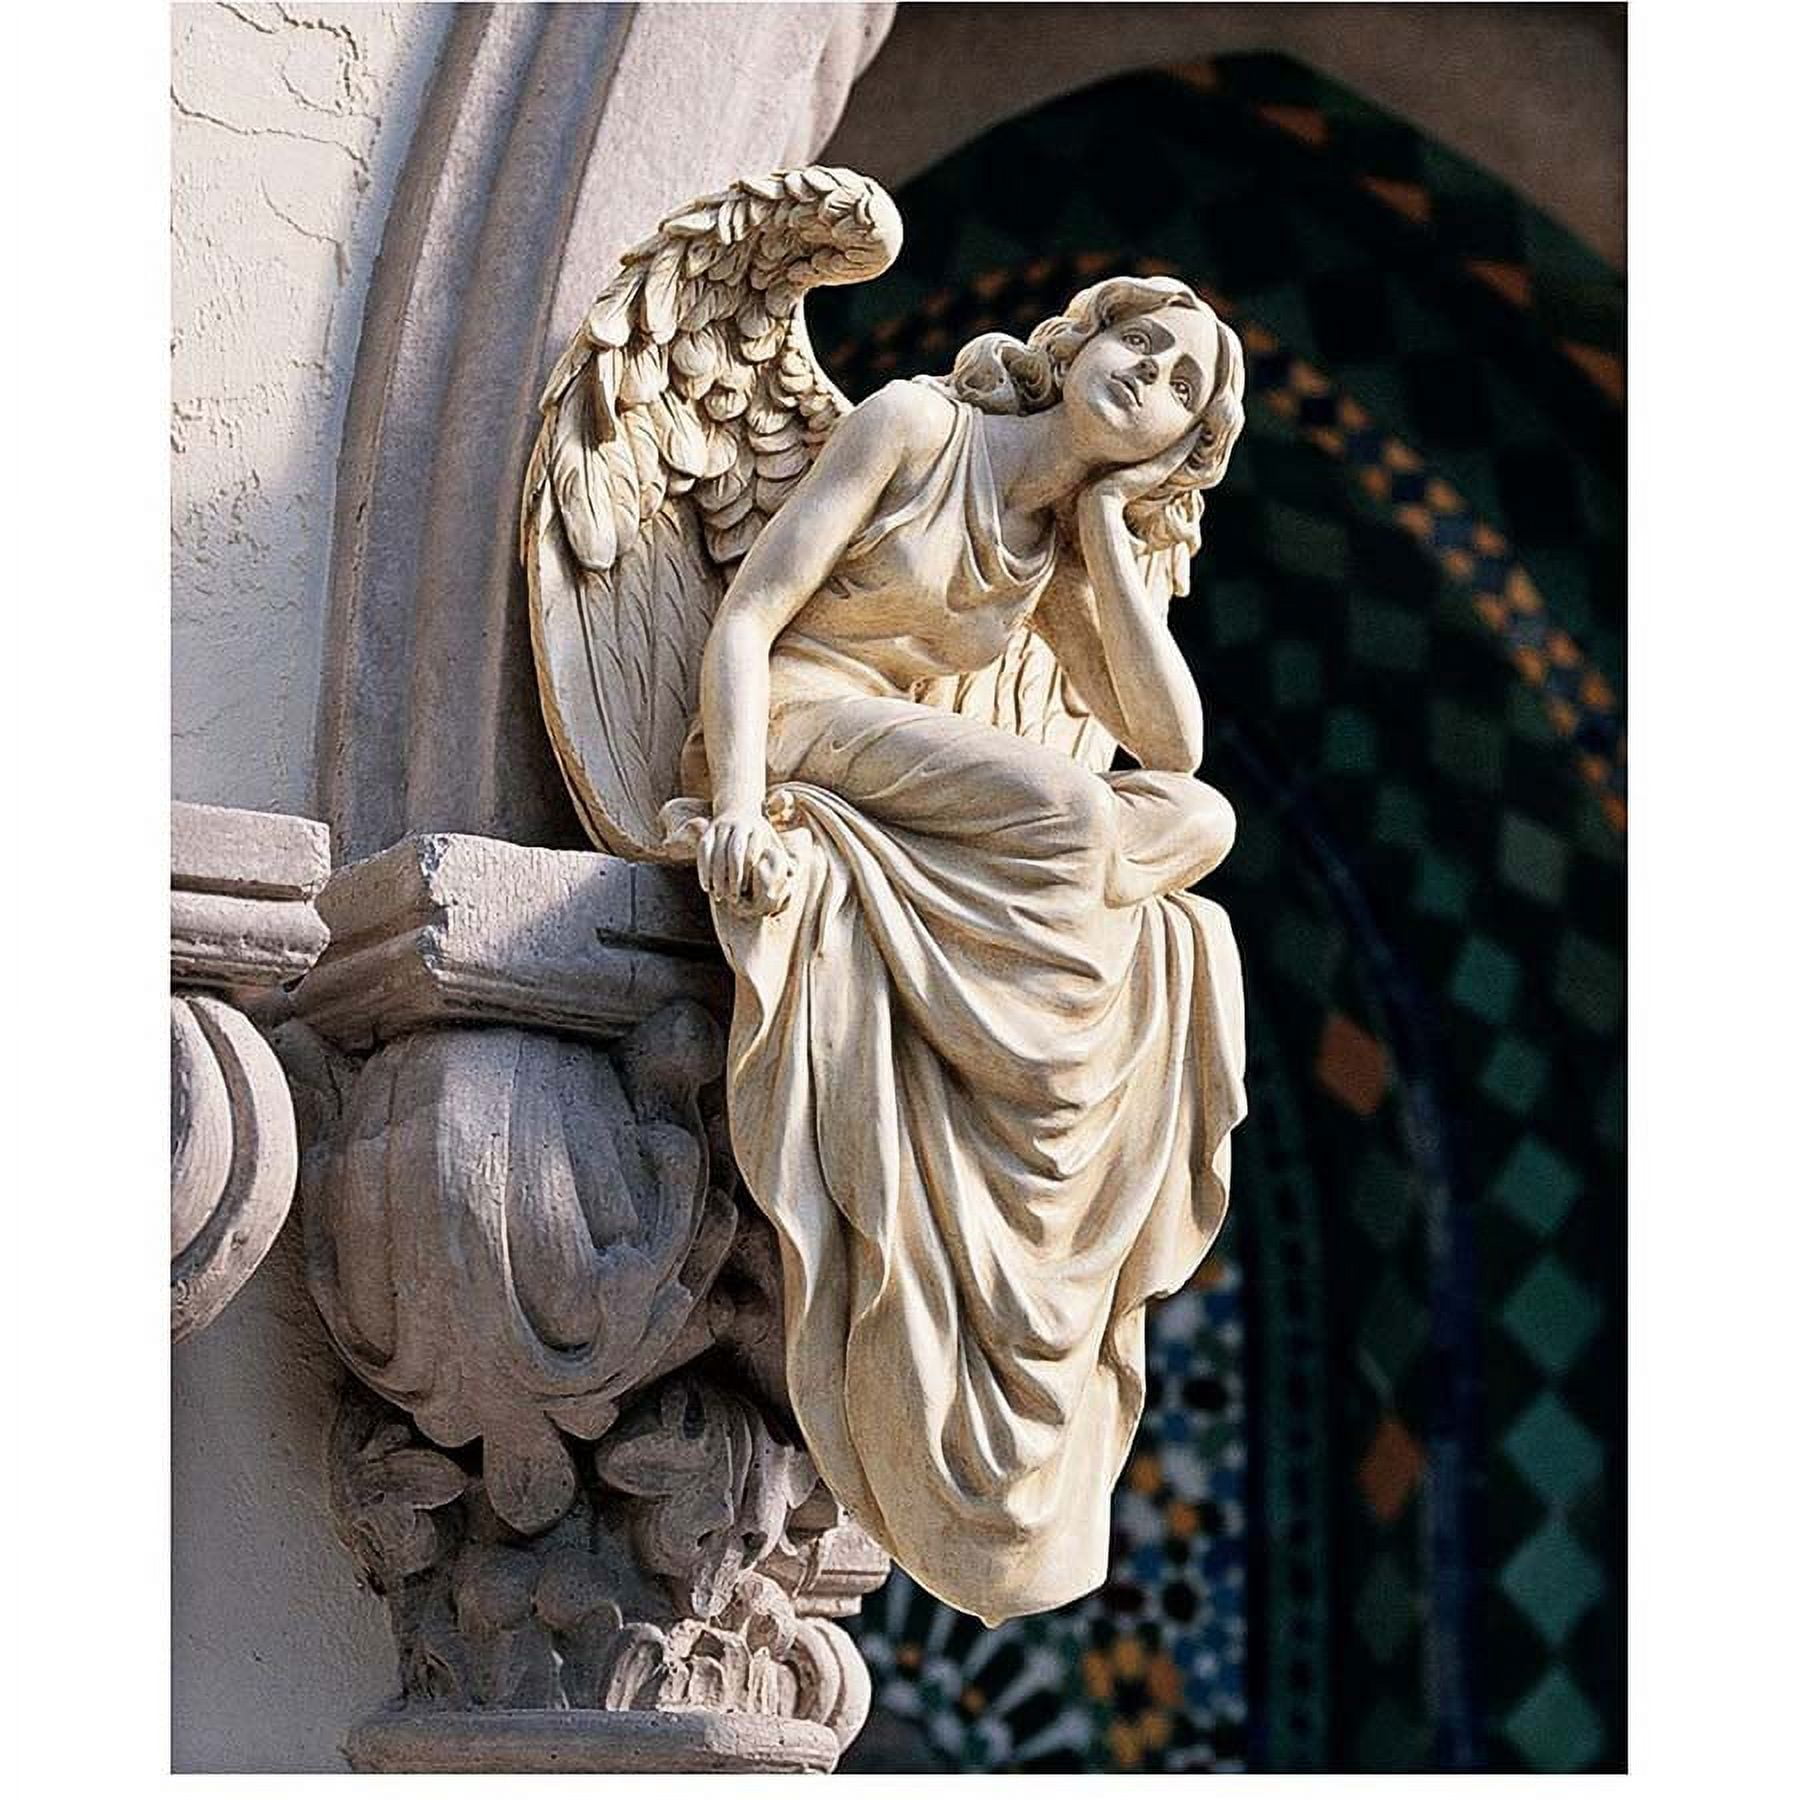 Design Toscano Resting Grace Sitting Angel Sculpture: Large 